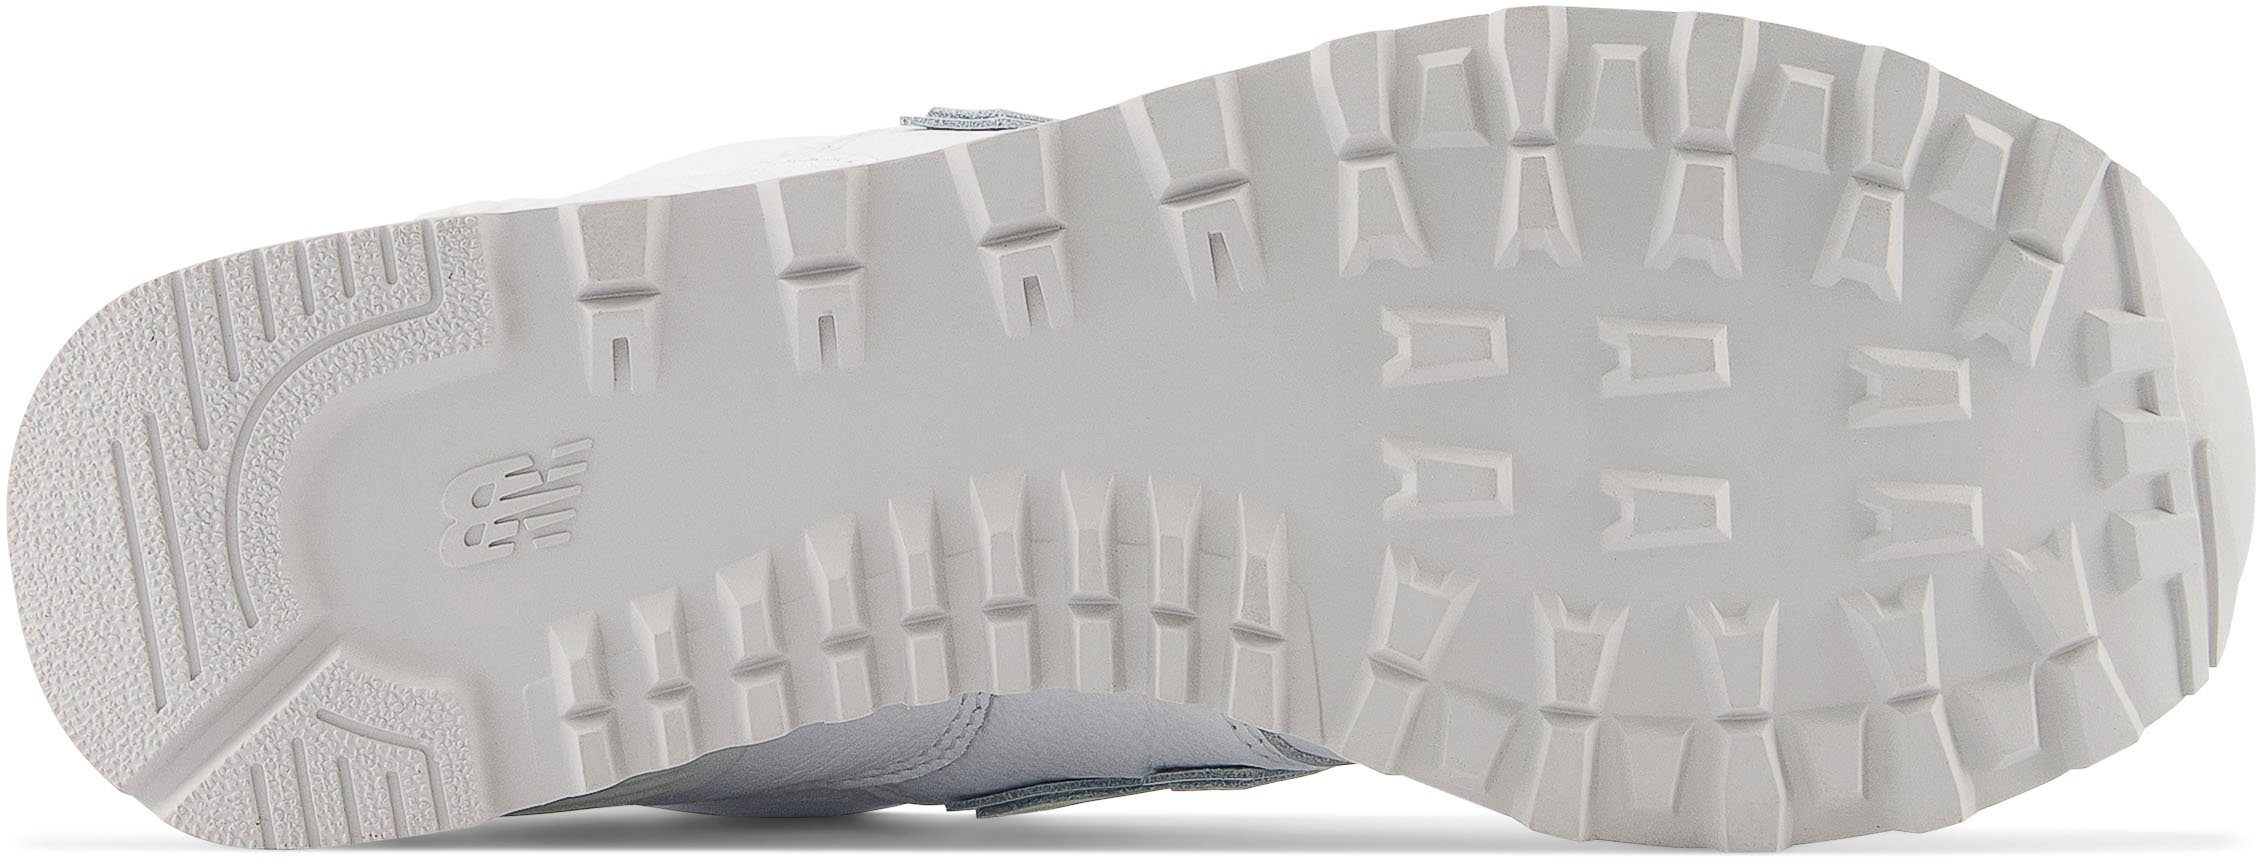 New Balance WL574 Core granite-white Sneaker